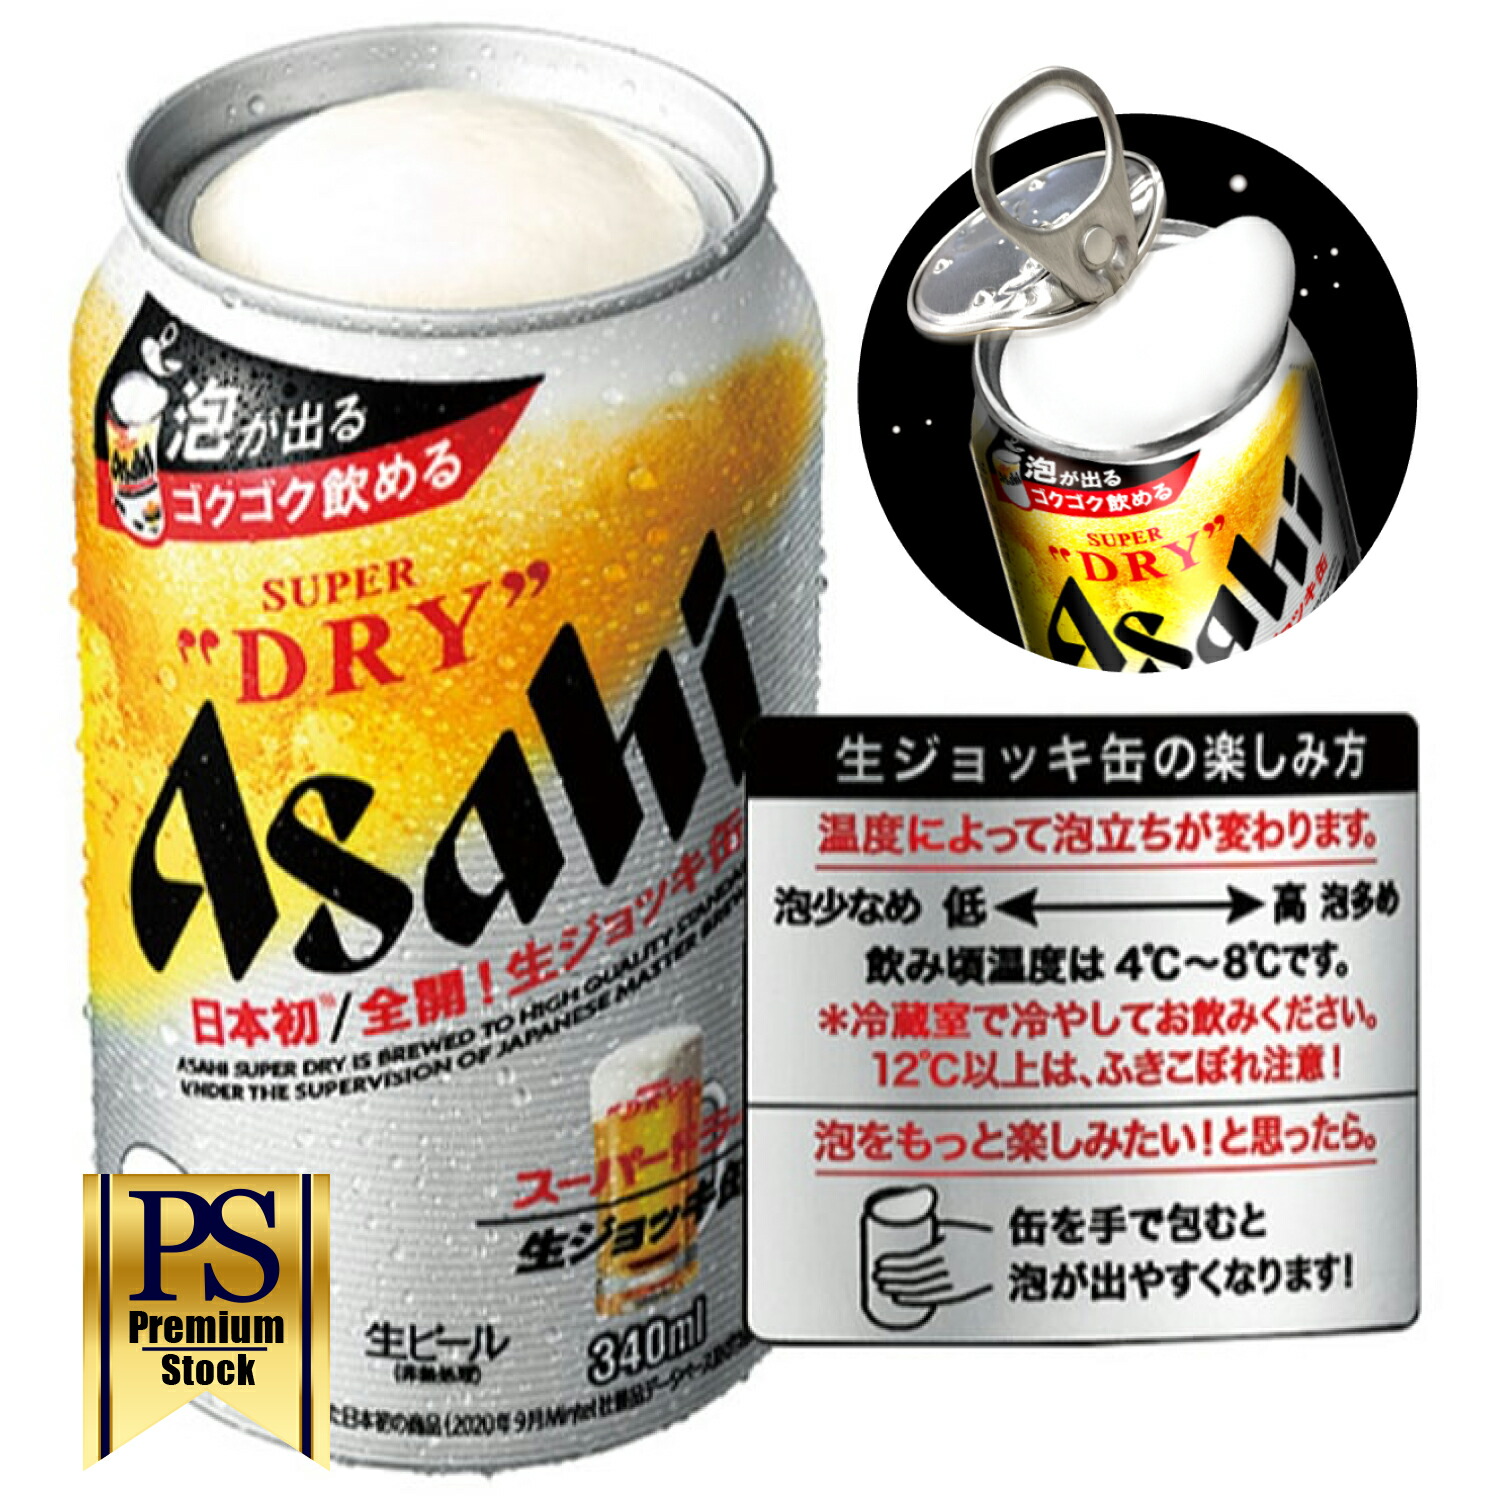 【ーミーな】 アサヒ - ★最新版★ アサヒ スーパードライ 生ジョッキ ビール 340ml 48本 生缶の通販 by lr0811 shop